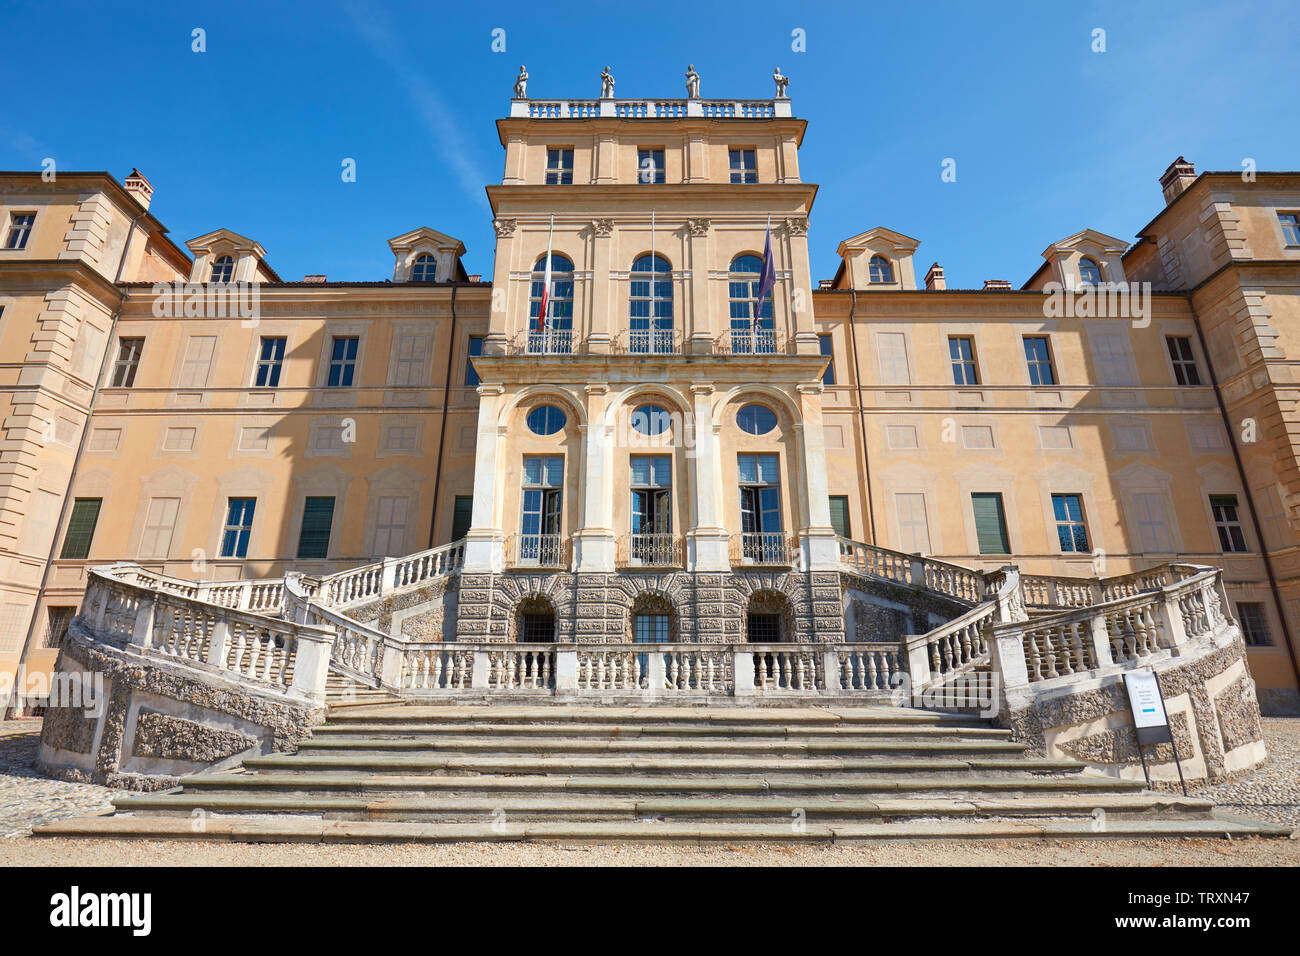 Torino, Italia - 20 agosto 2017: Villa della Regina, regina palace facciata, basso angolo vista in una soleggiata giornata estiva a Torino, Italia. Foto Stock